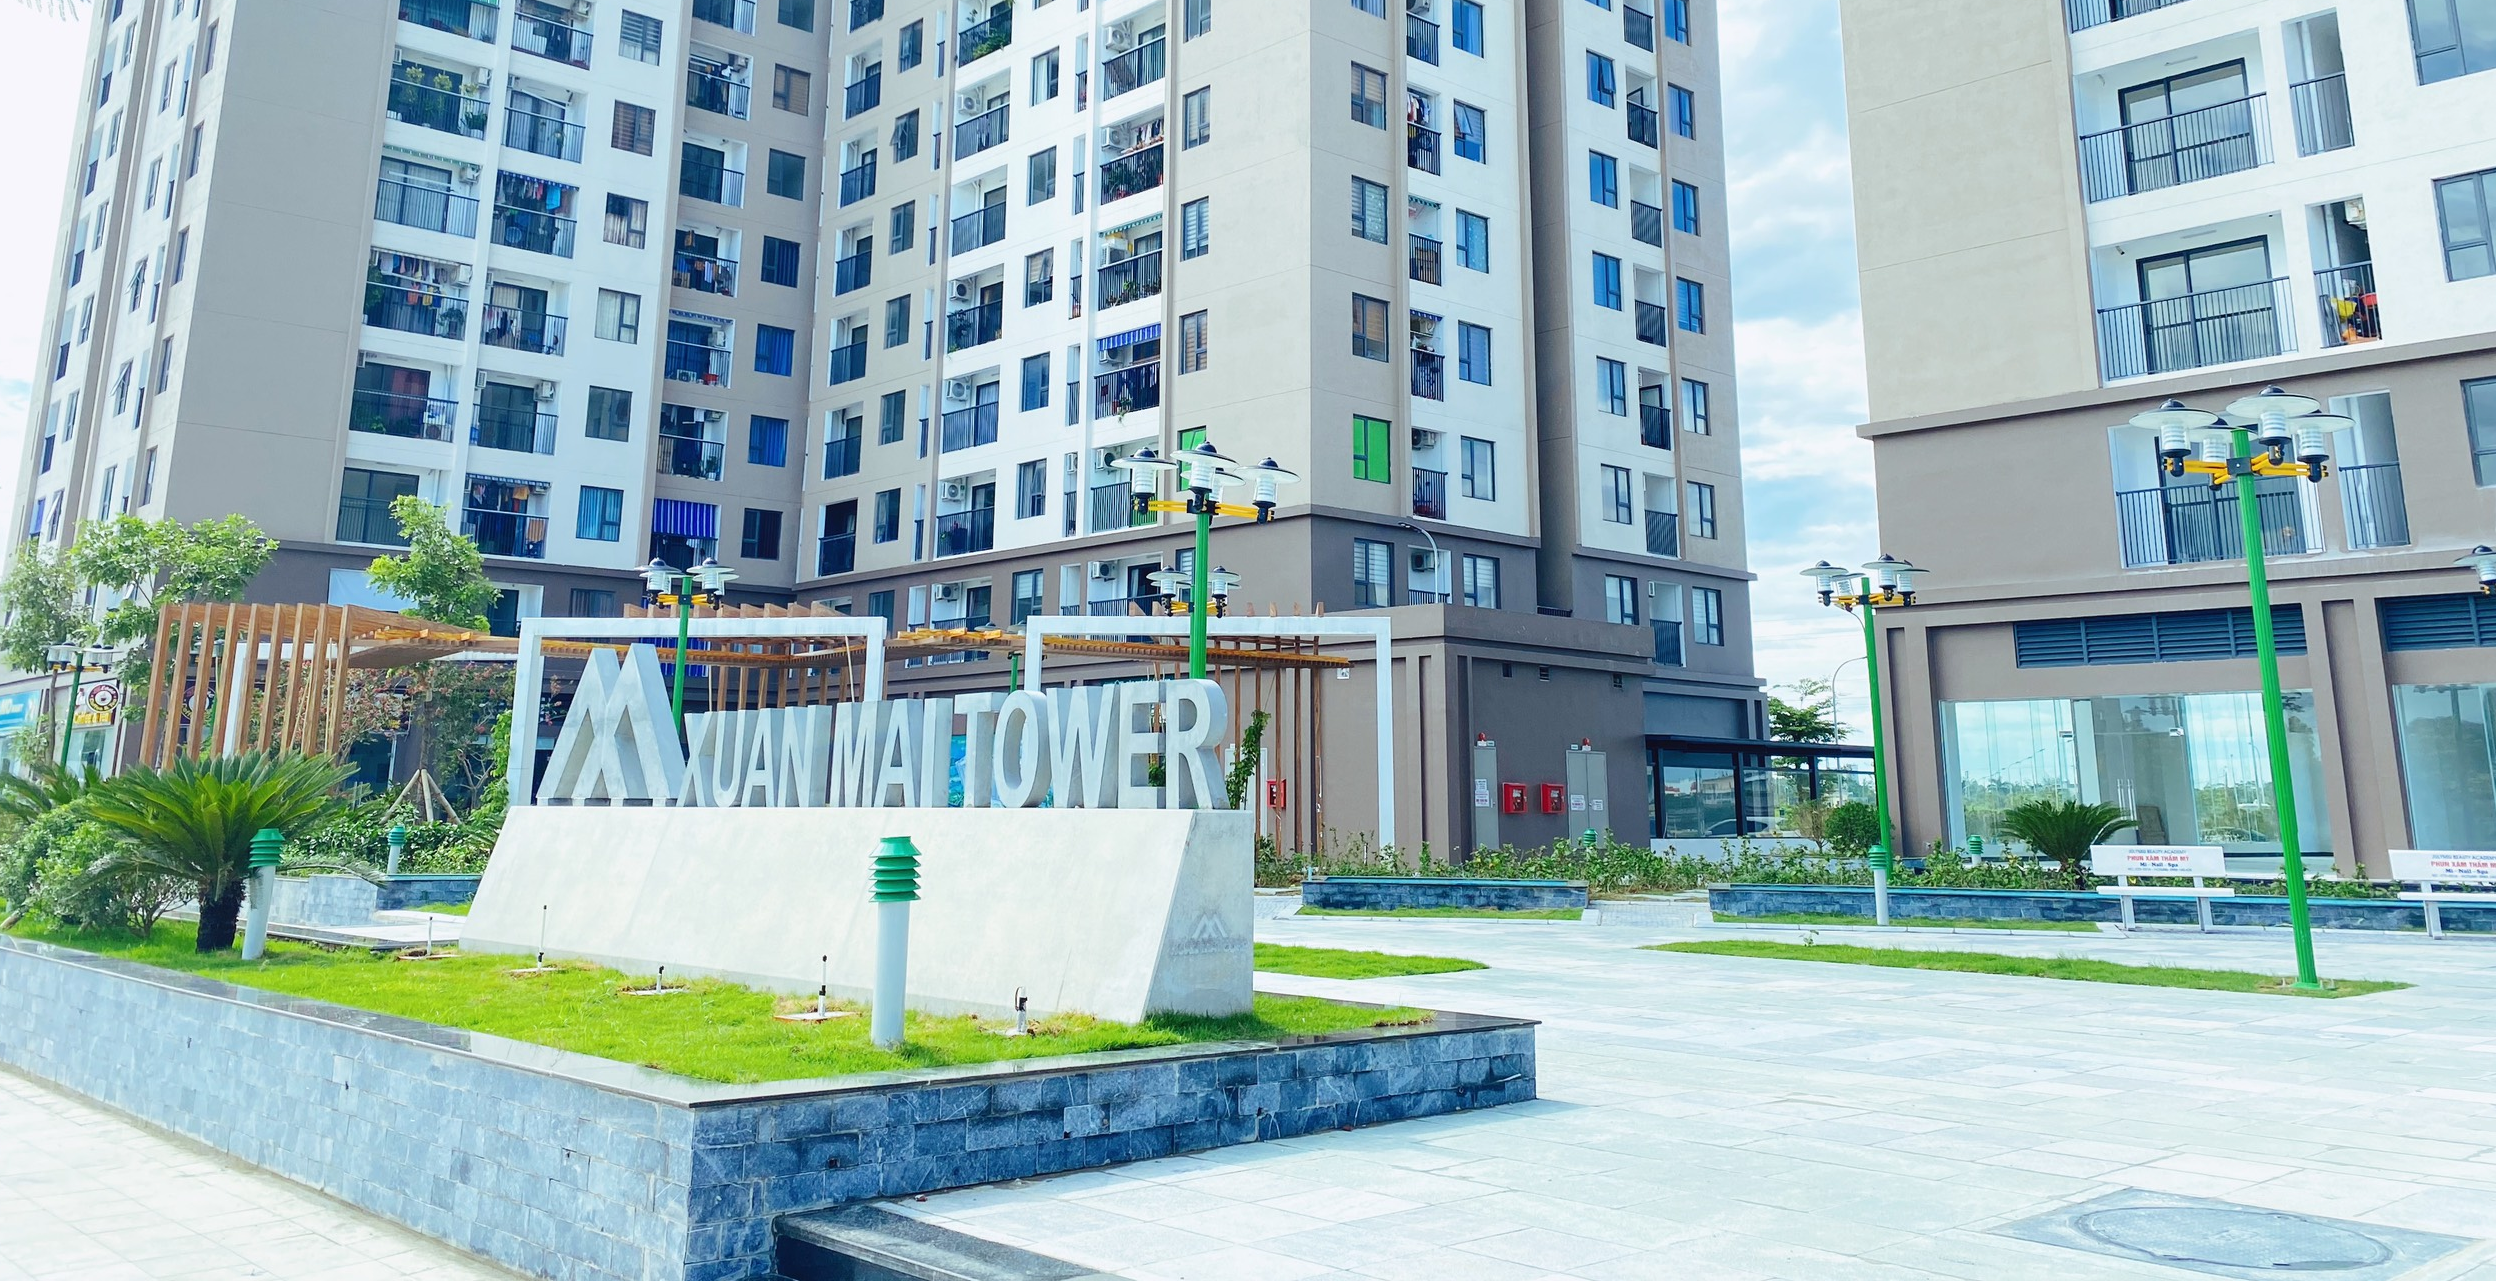 Một góc nhỏ cảnh quan đang được hoàn thiện tại tổ hợp chung cư Xuân Mai Tower Thanh Hóa